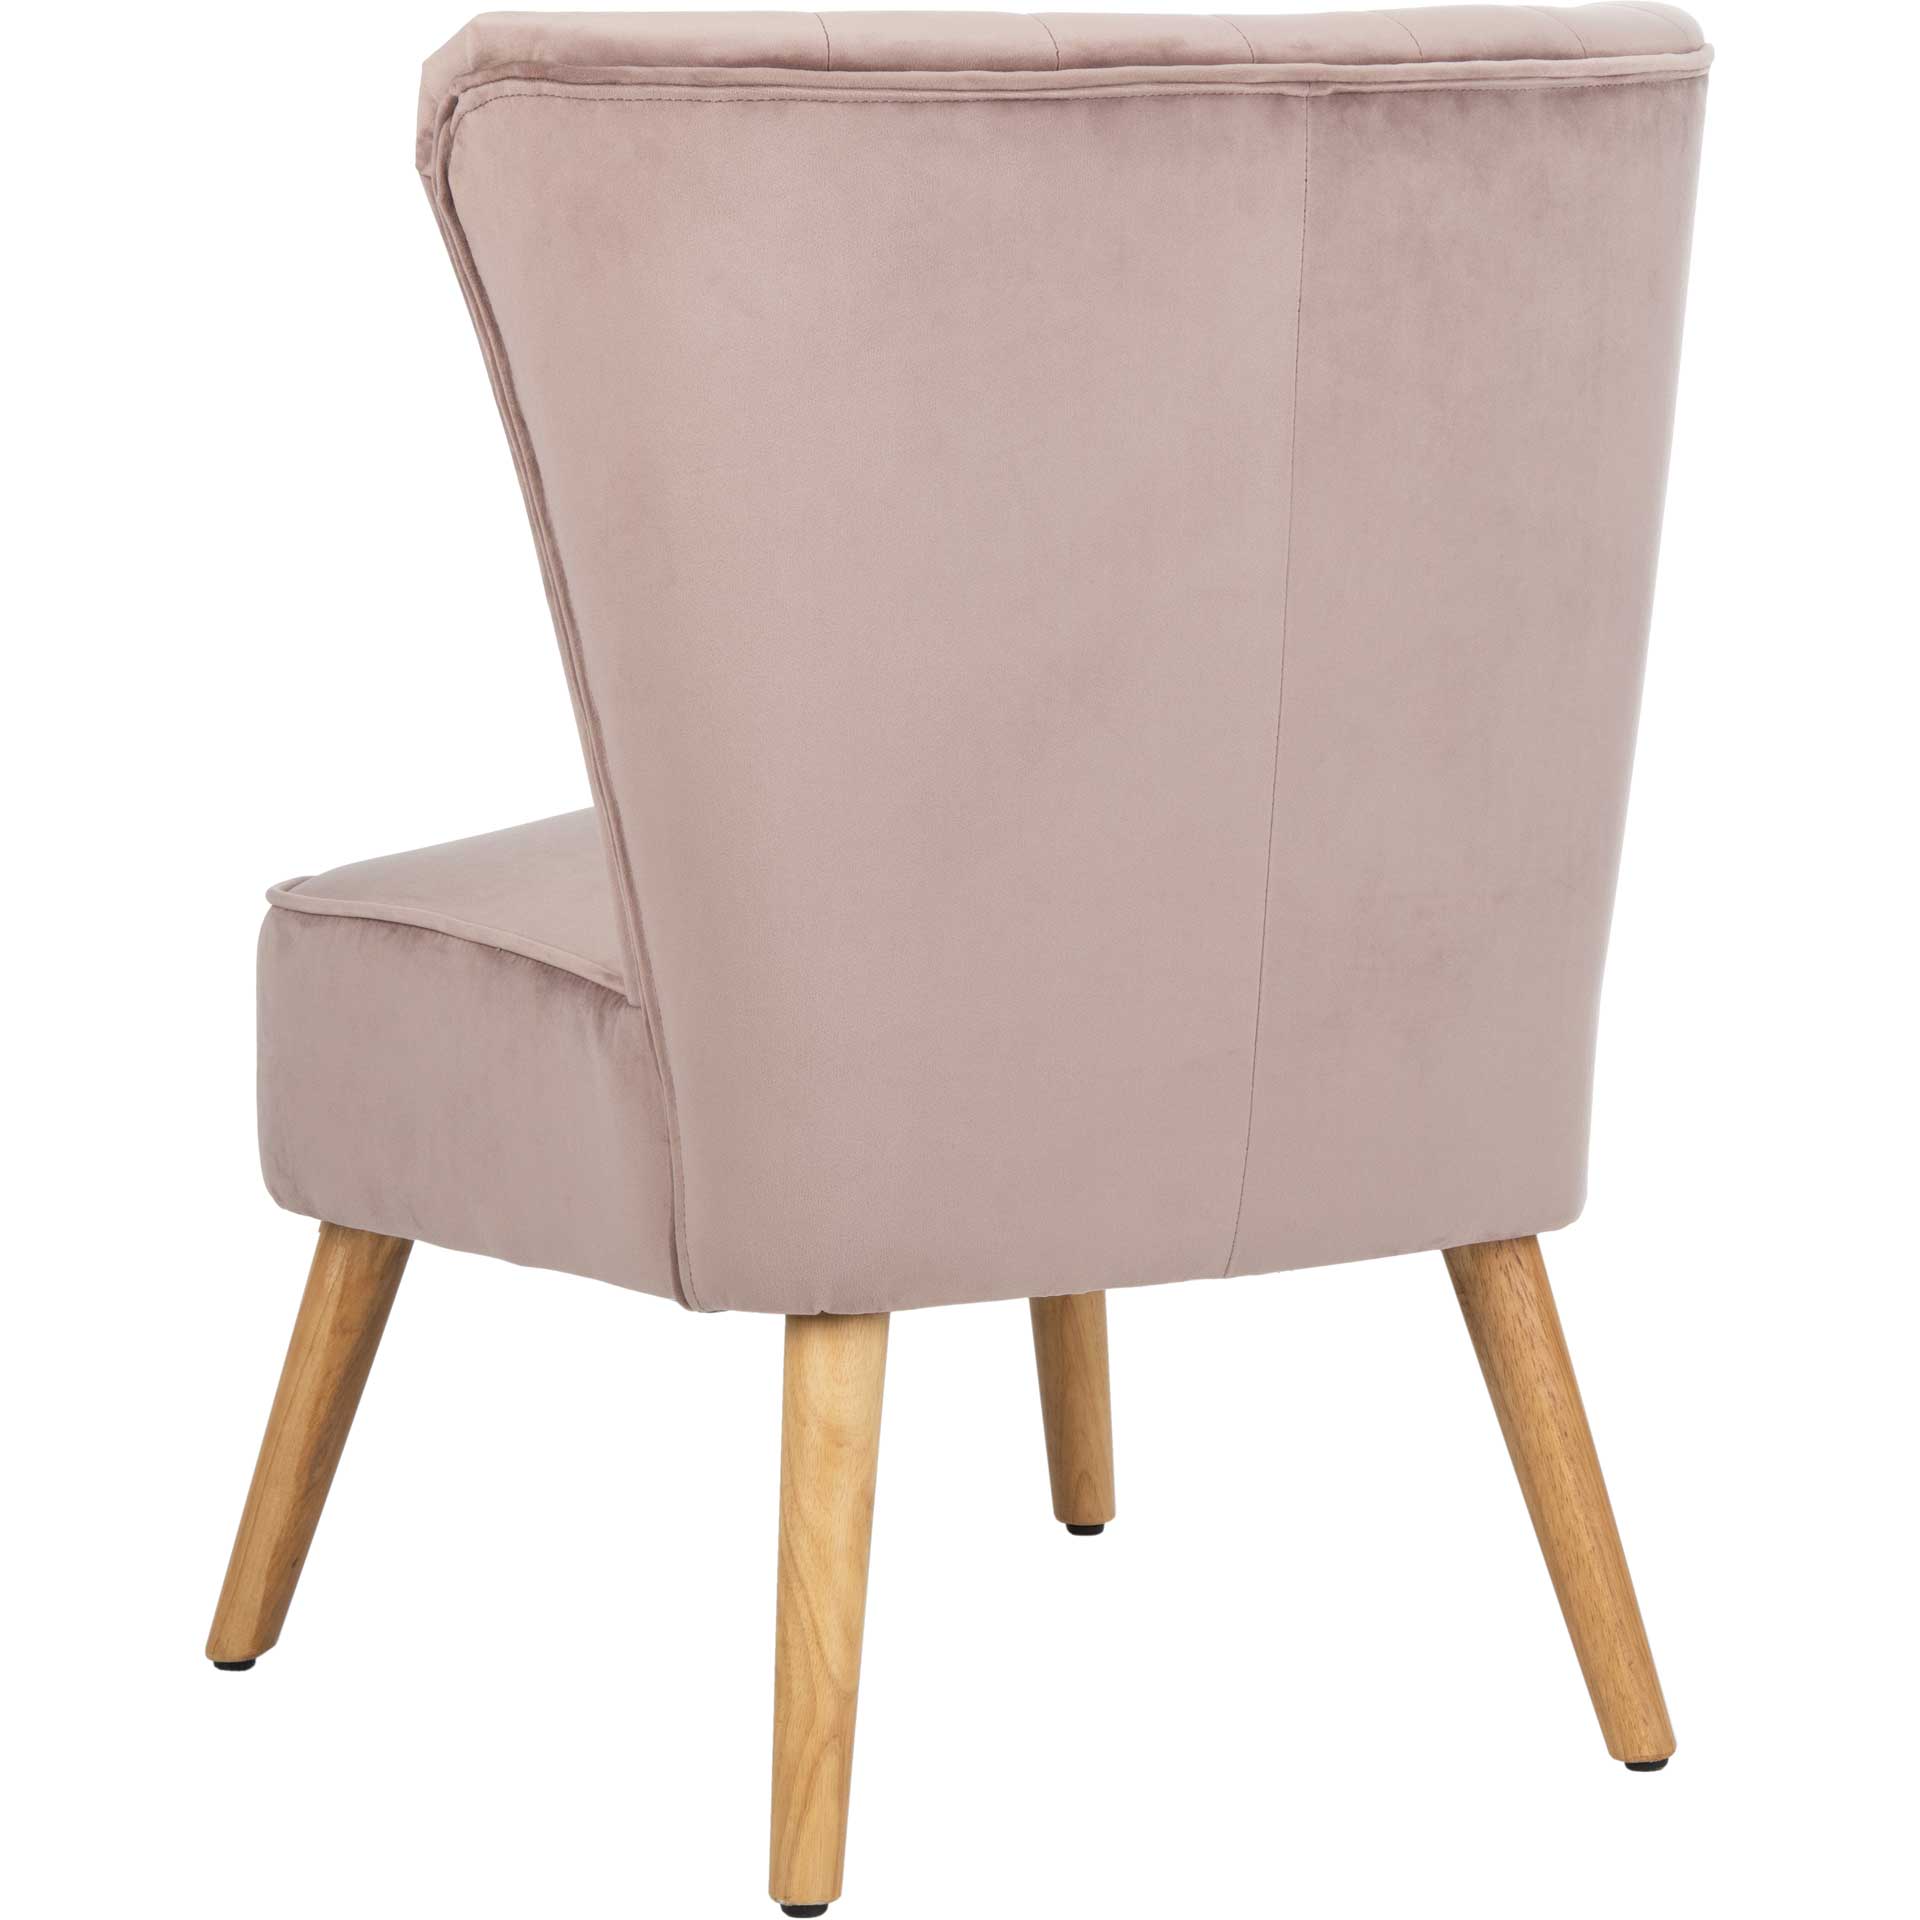 Juliet Mid Century Accent Chair Mauve/Natural